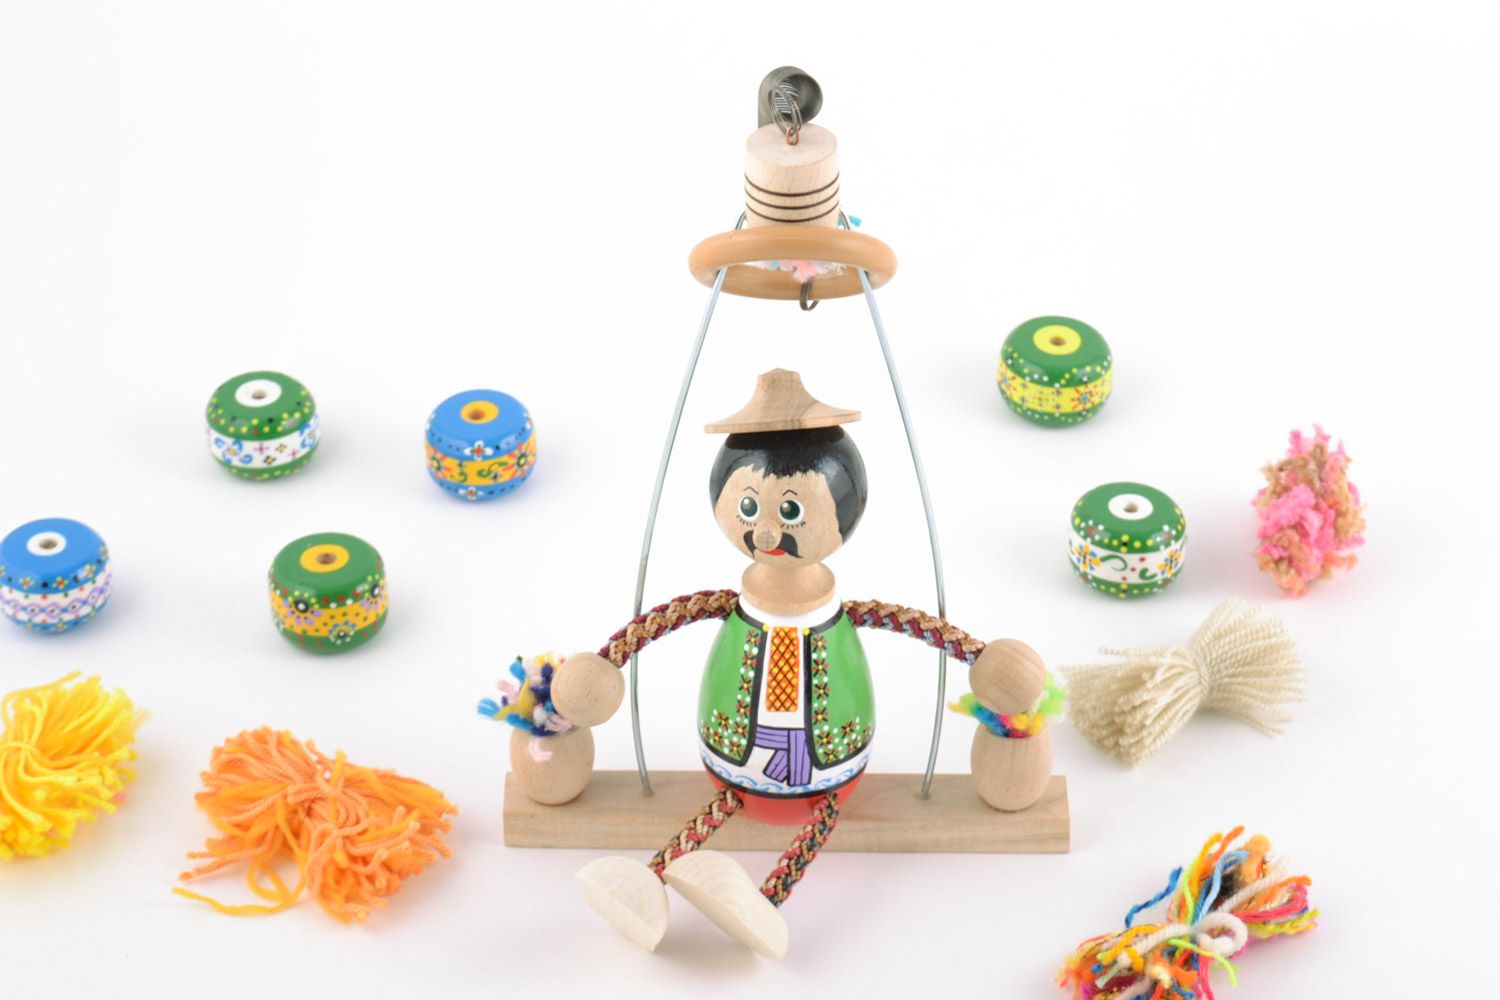 Handmade bemaltes buntes Öko Spielzeug aus Holz mit Feder Junge auf Schaukel foto 1